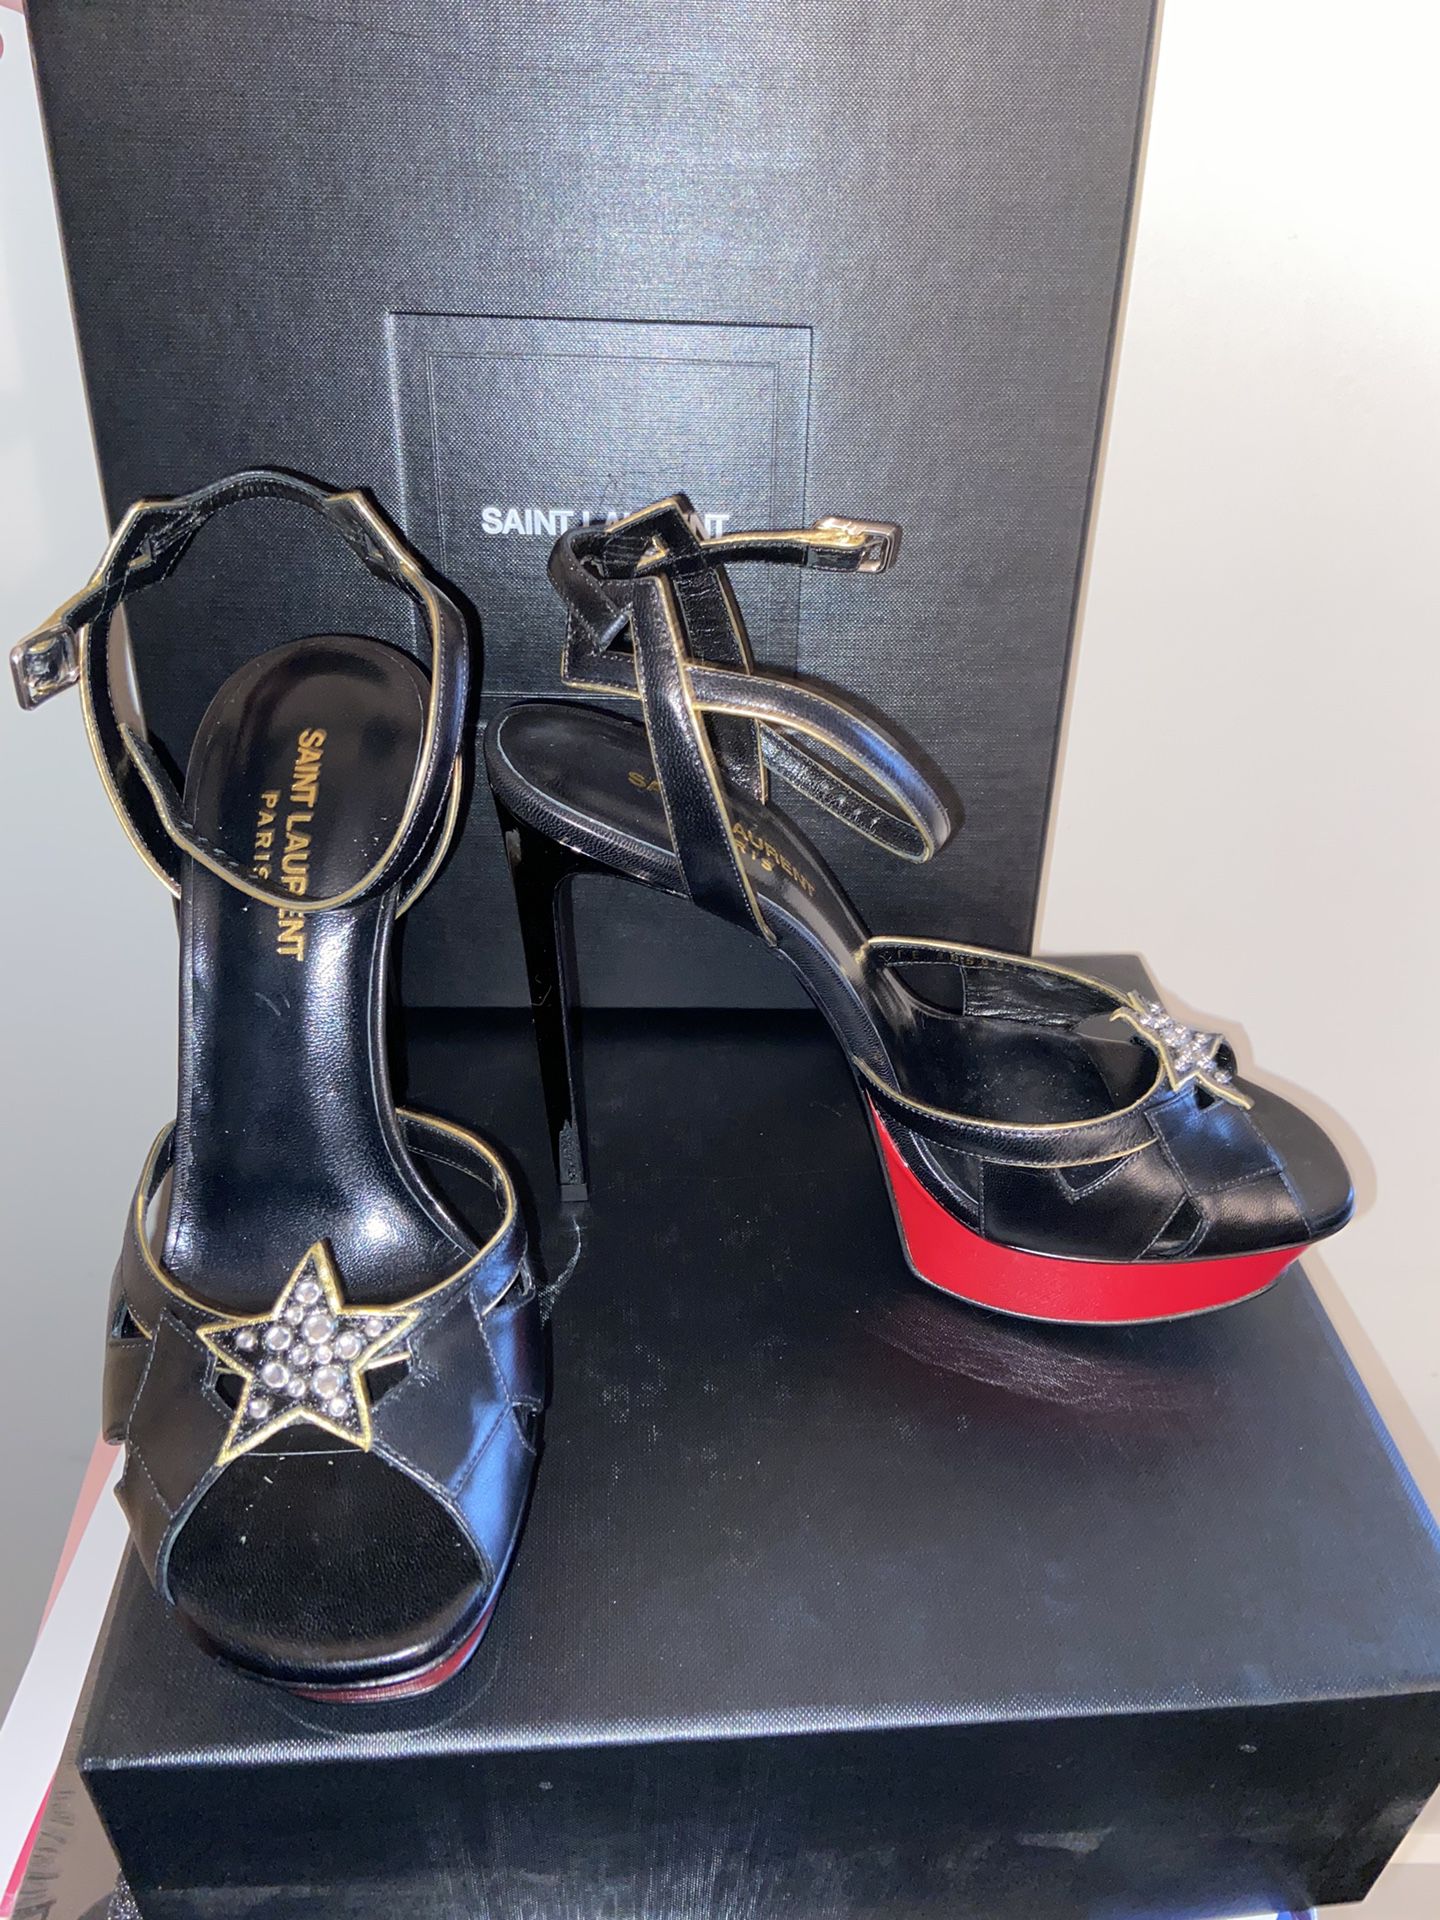 Saint Laurent Bianca Studded Crystal Star Platform Sandals in Black, Red & Gold 